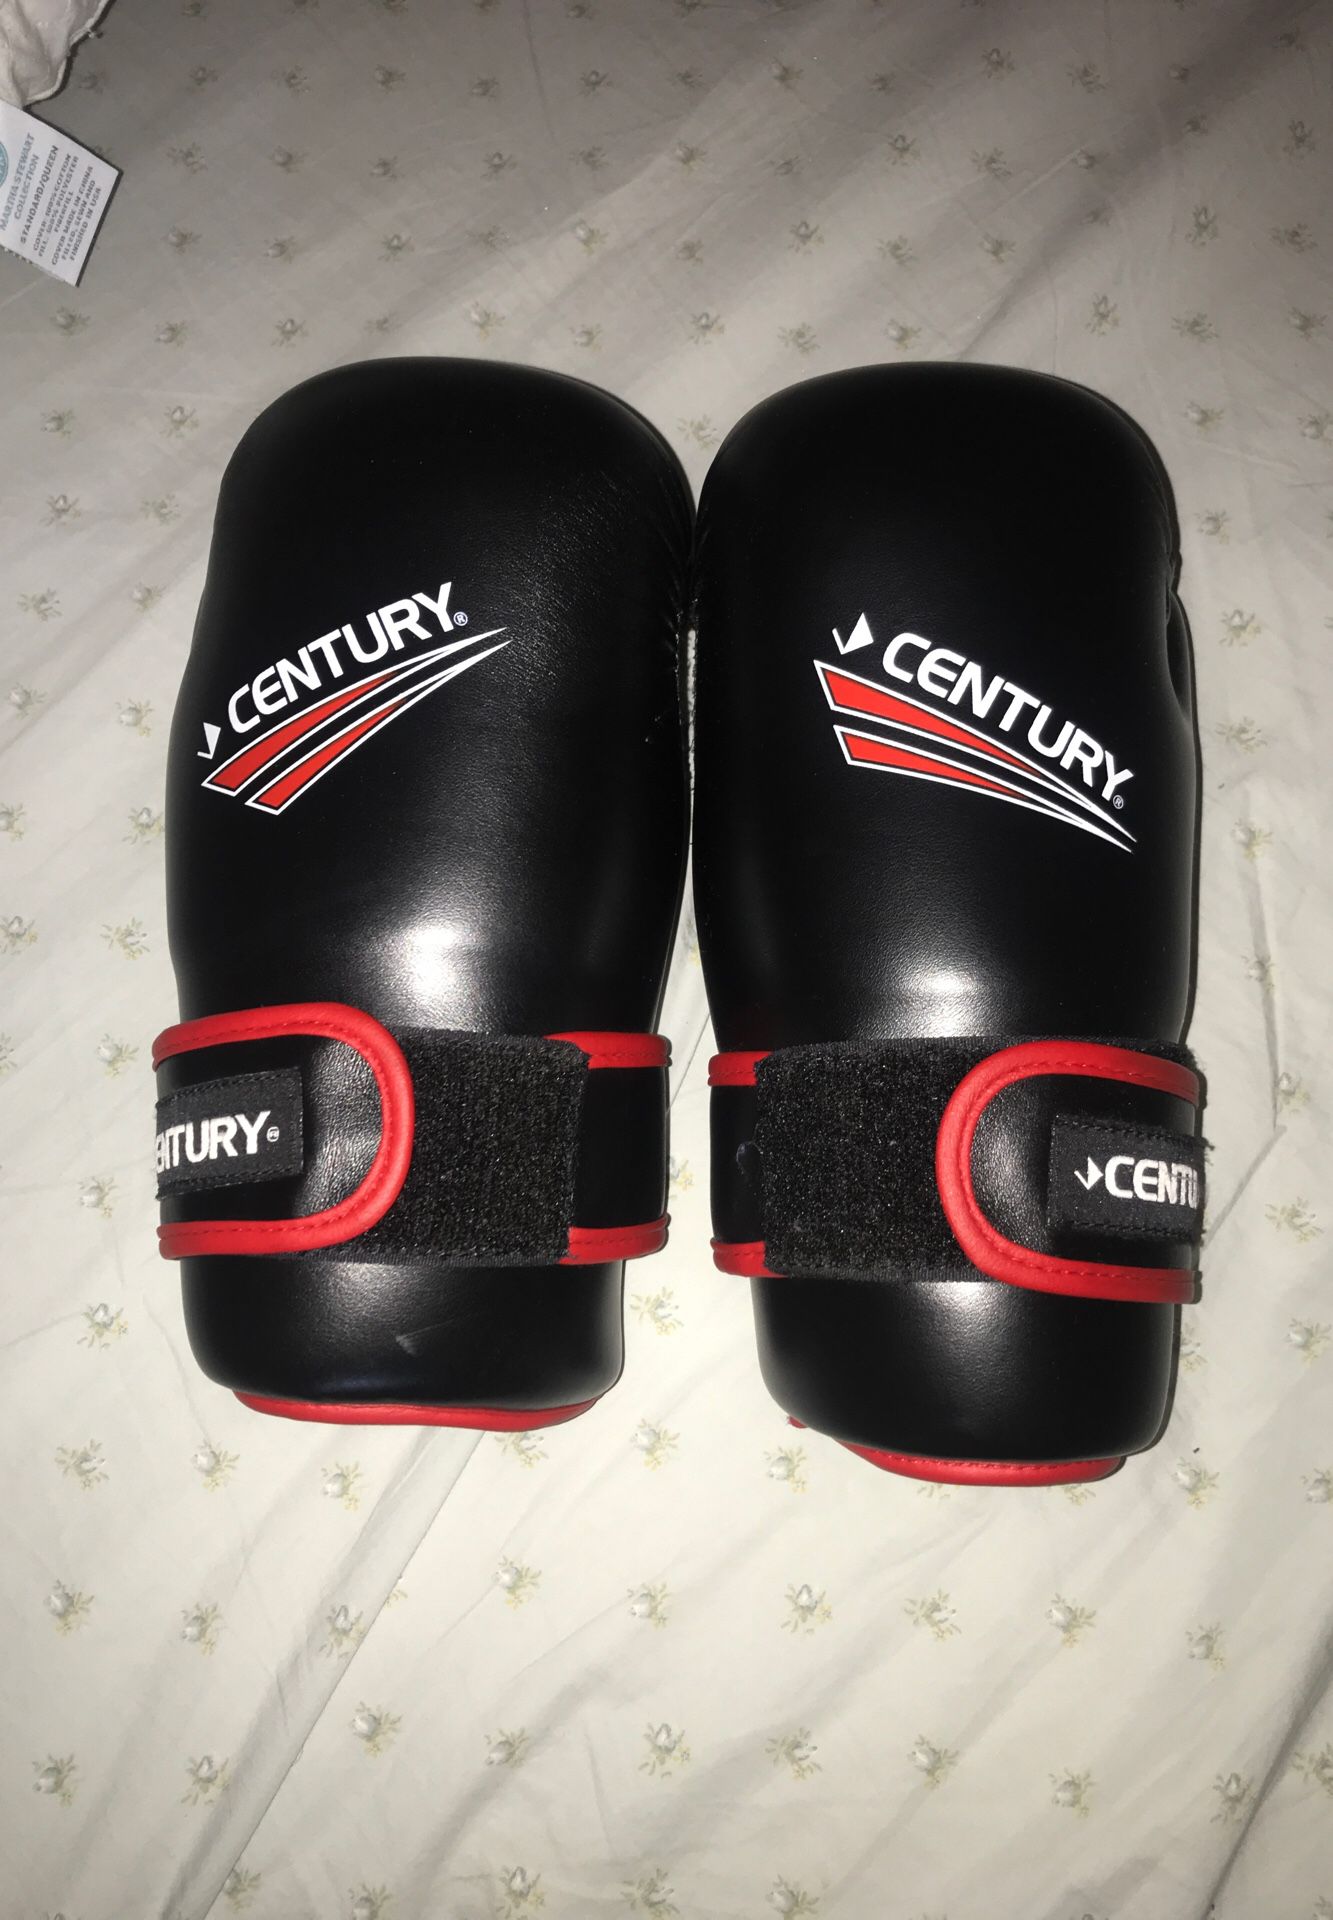 Century Karate Gloves